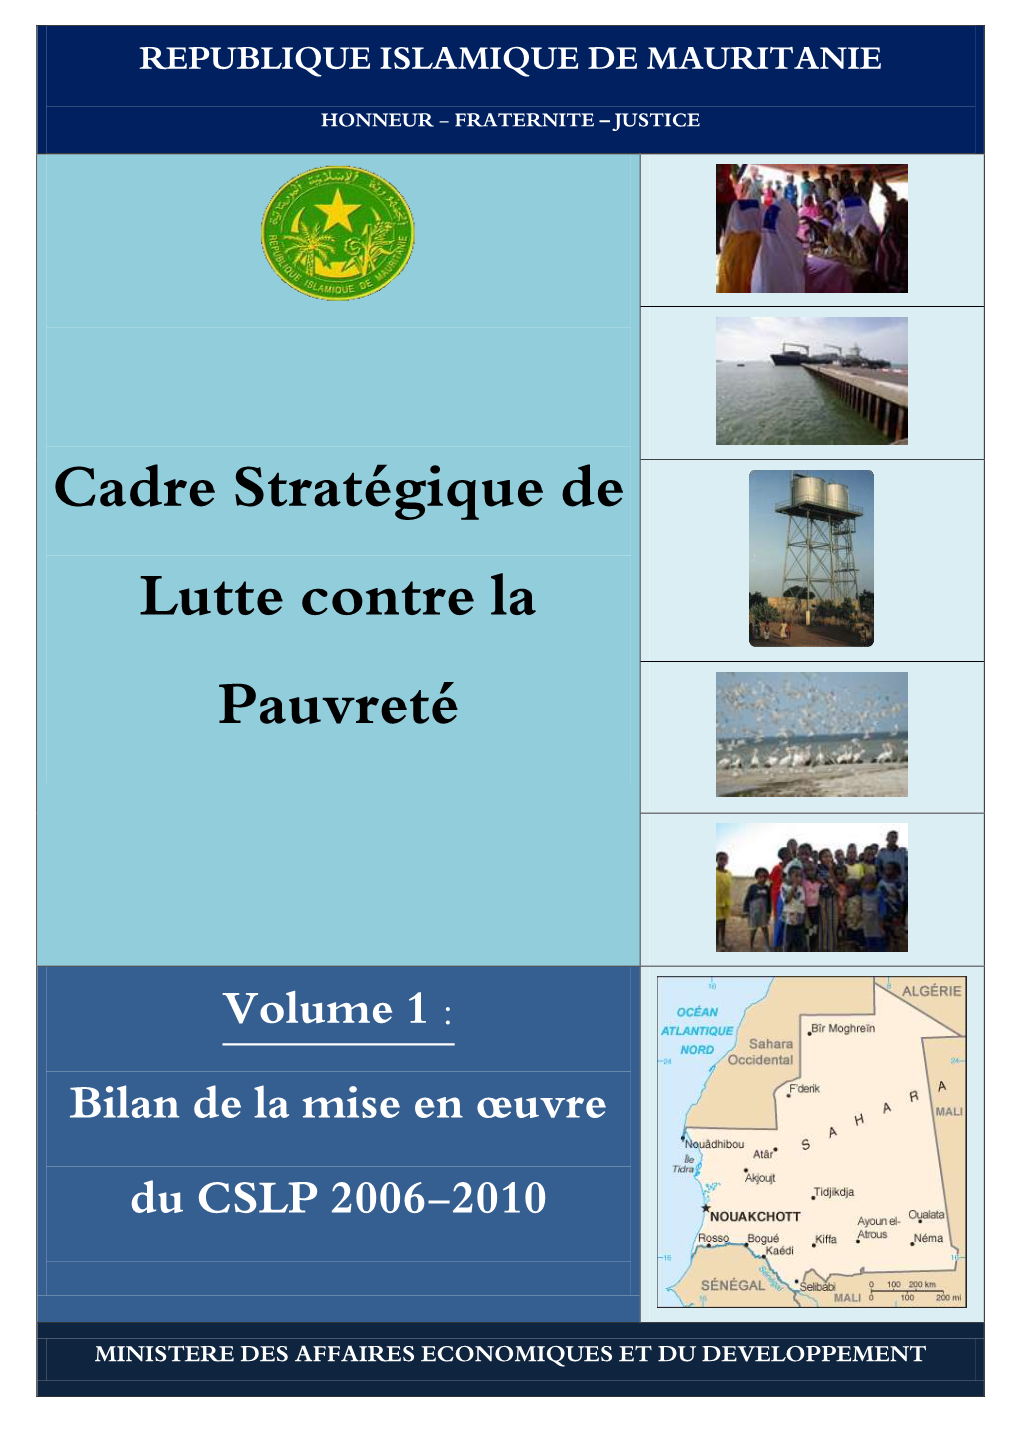 Cadre Stratégique De Lutte Contre La Pauvreté 2011-2015